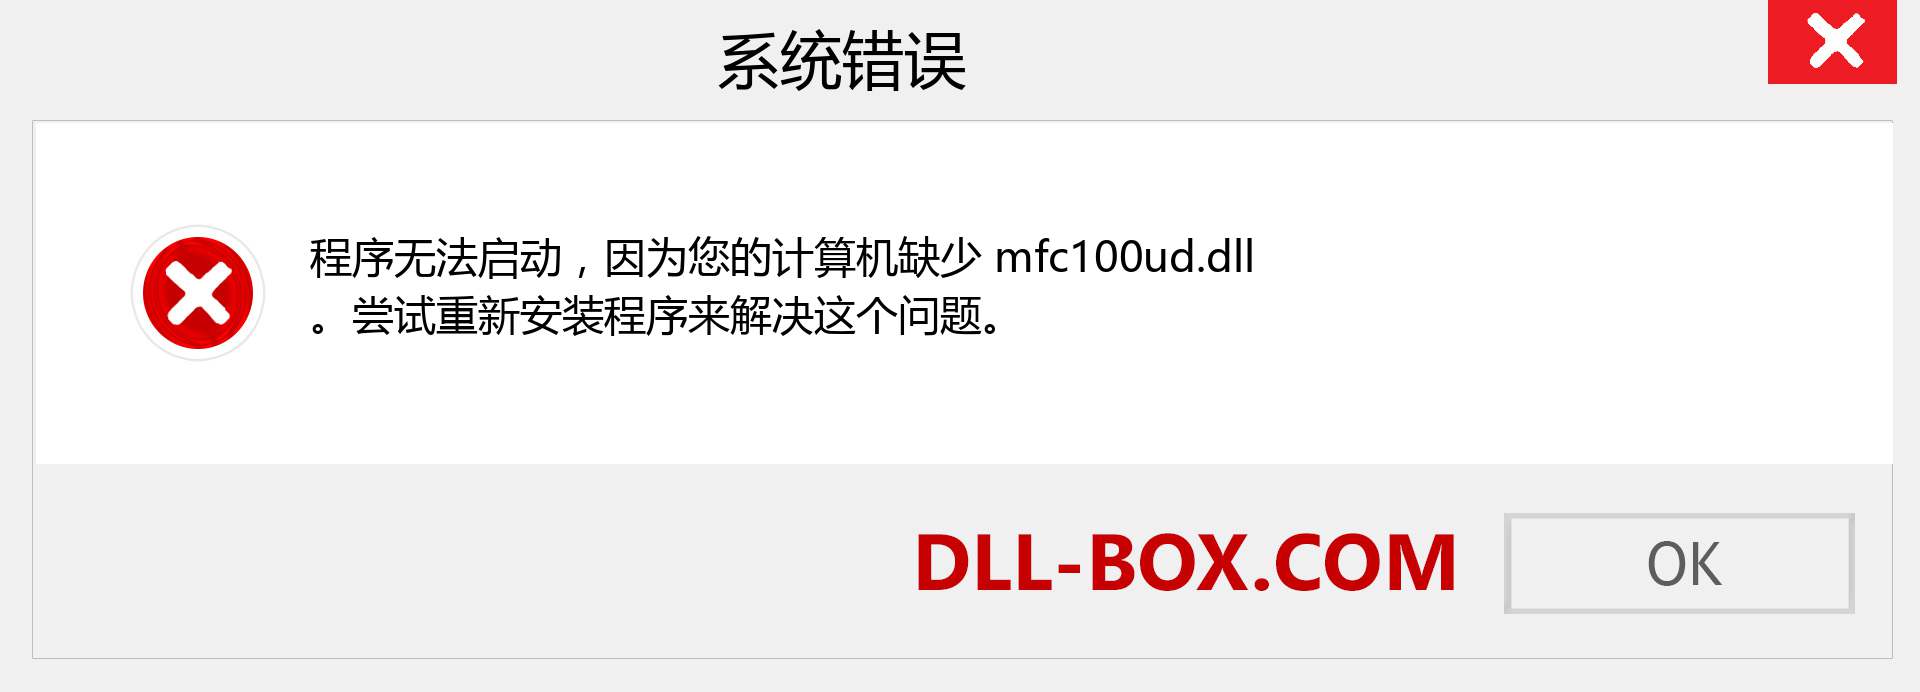 mfc100ud.dll 文件丢失？。 适用于 Windows 7、8、10 的下载 - 修复 Windows、照片、图像上的 mfc100ud dll 丢失错误